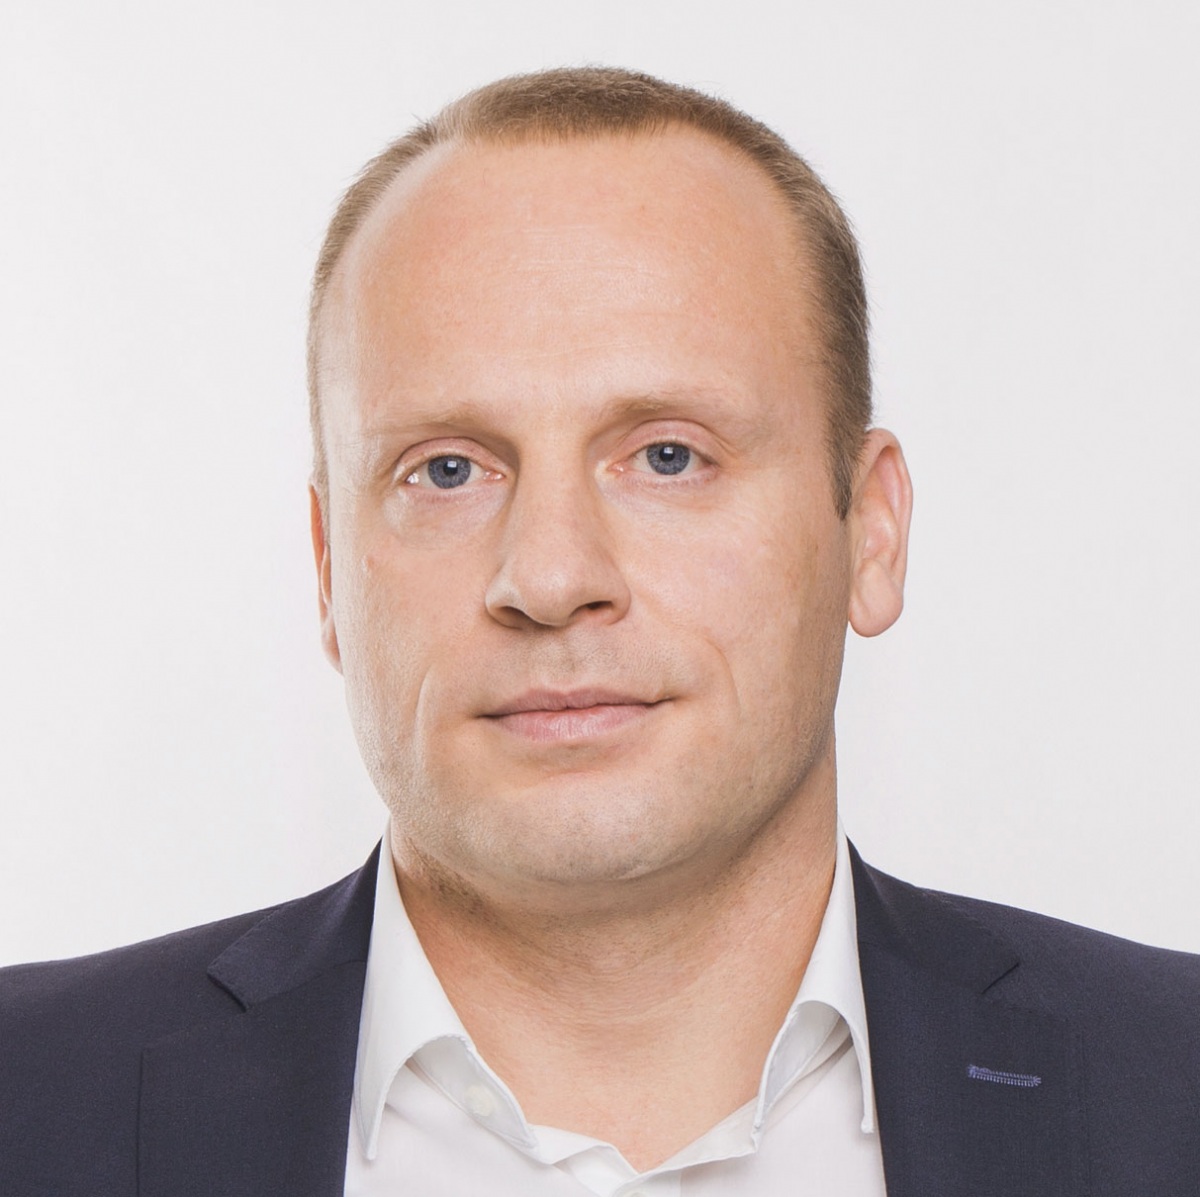 Bastian Siebers, Vorsitzender Geschäftsführer, babymarkt.de GmbH